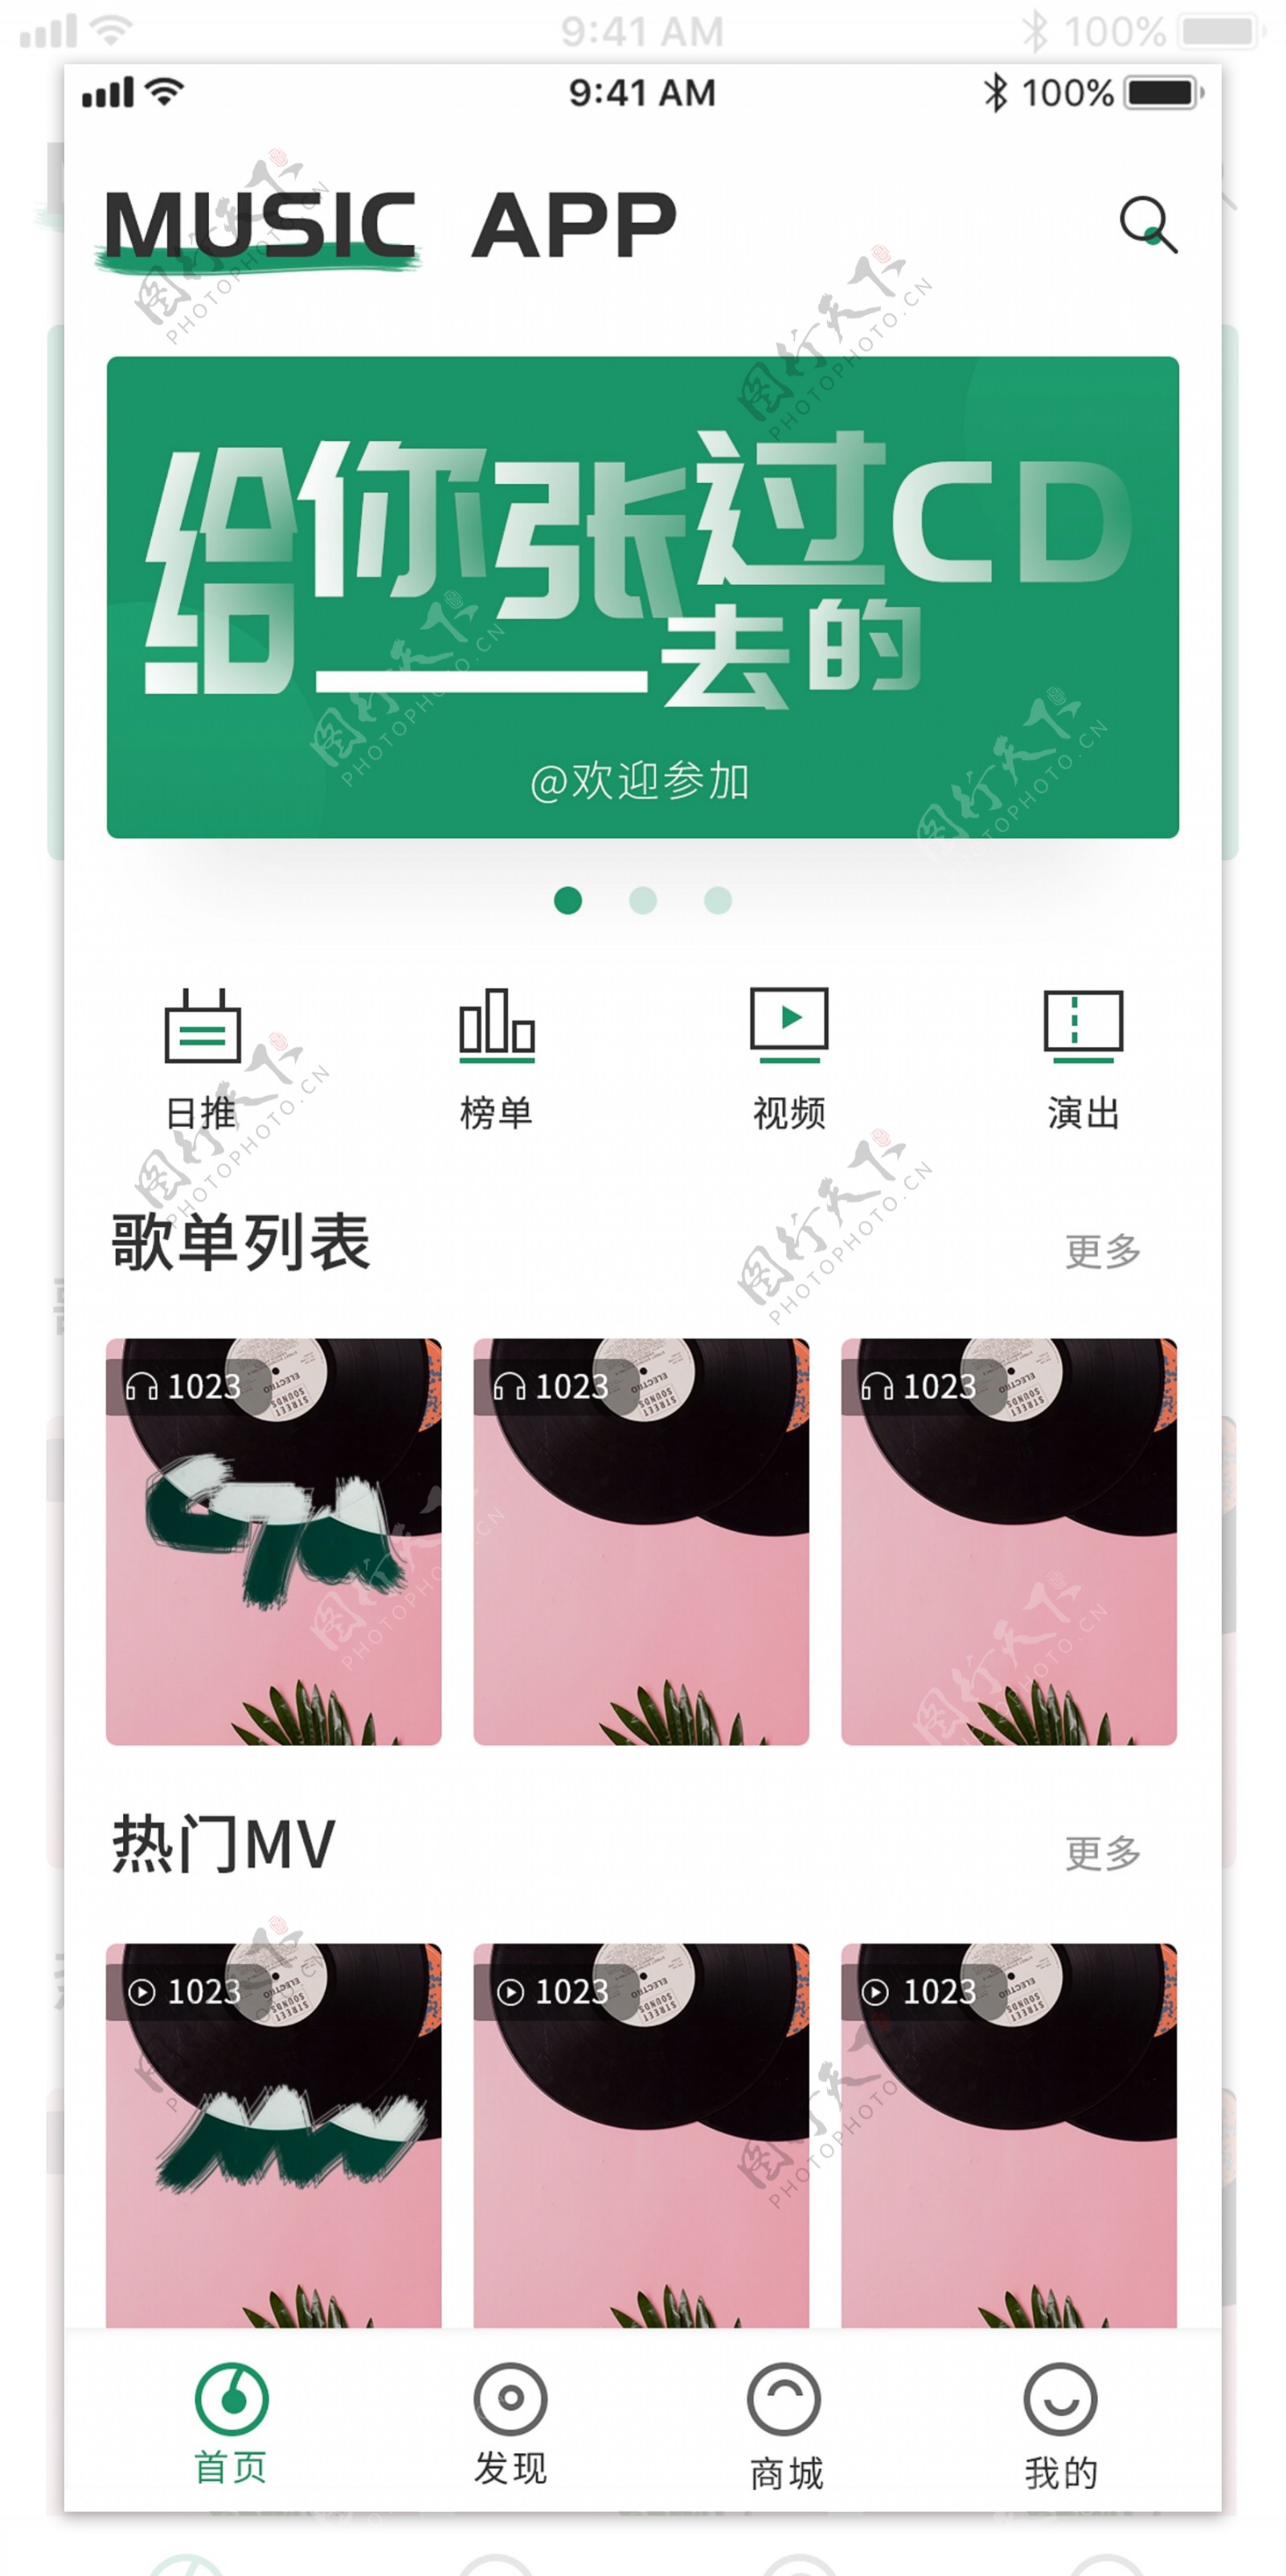 清新绿色系大留白追波风音乐app界面